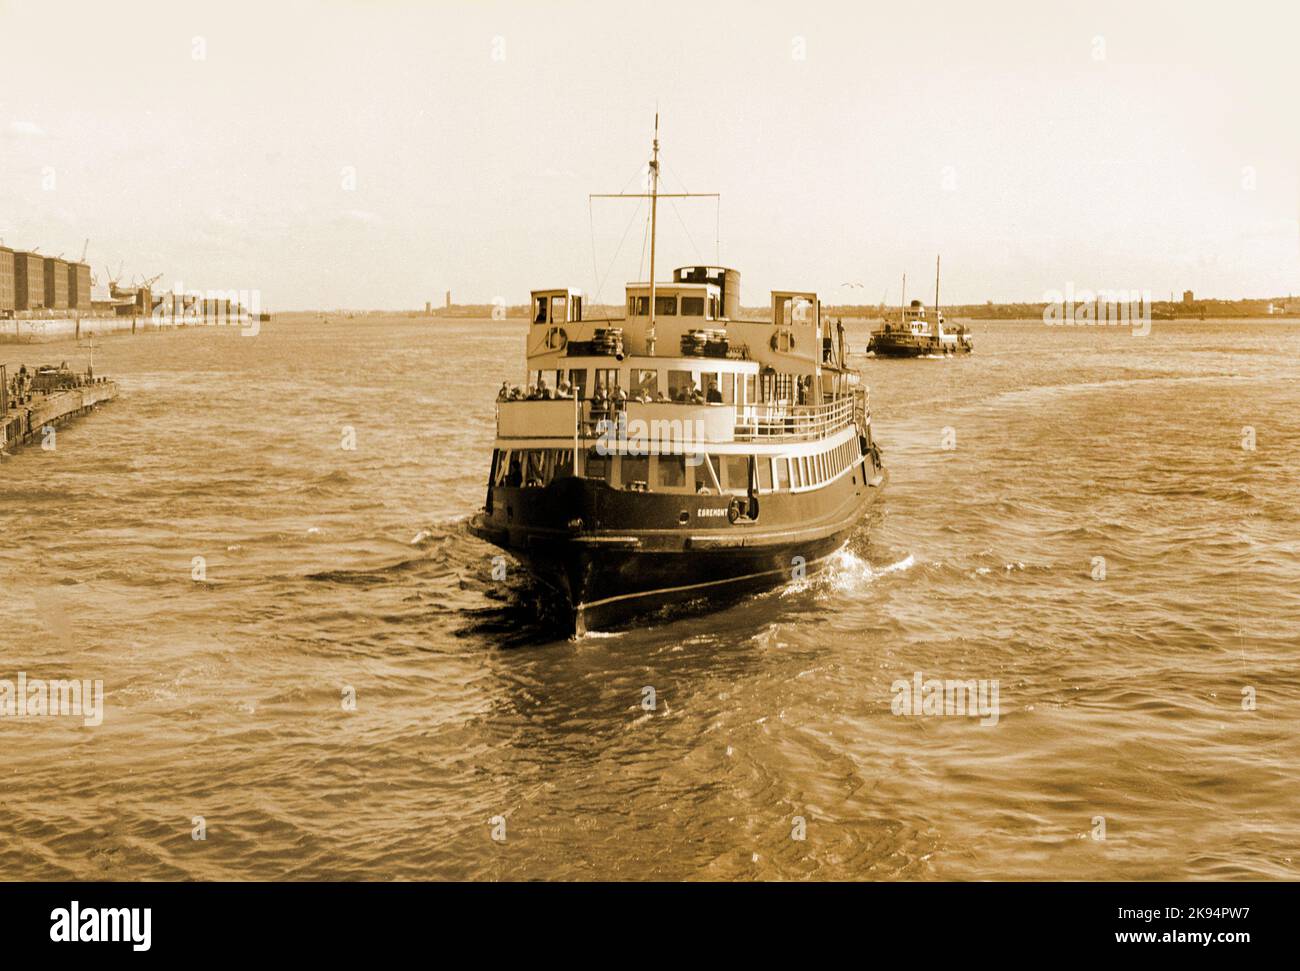 Vintage Liverpool 1968, due traghetti uno è l'Egremont traghetto impostazione vela attraverso il fiume Mersey. Immagine seppia, effetto grana grossa. Foto Stock